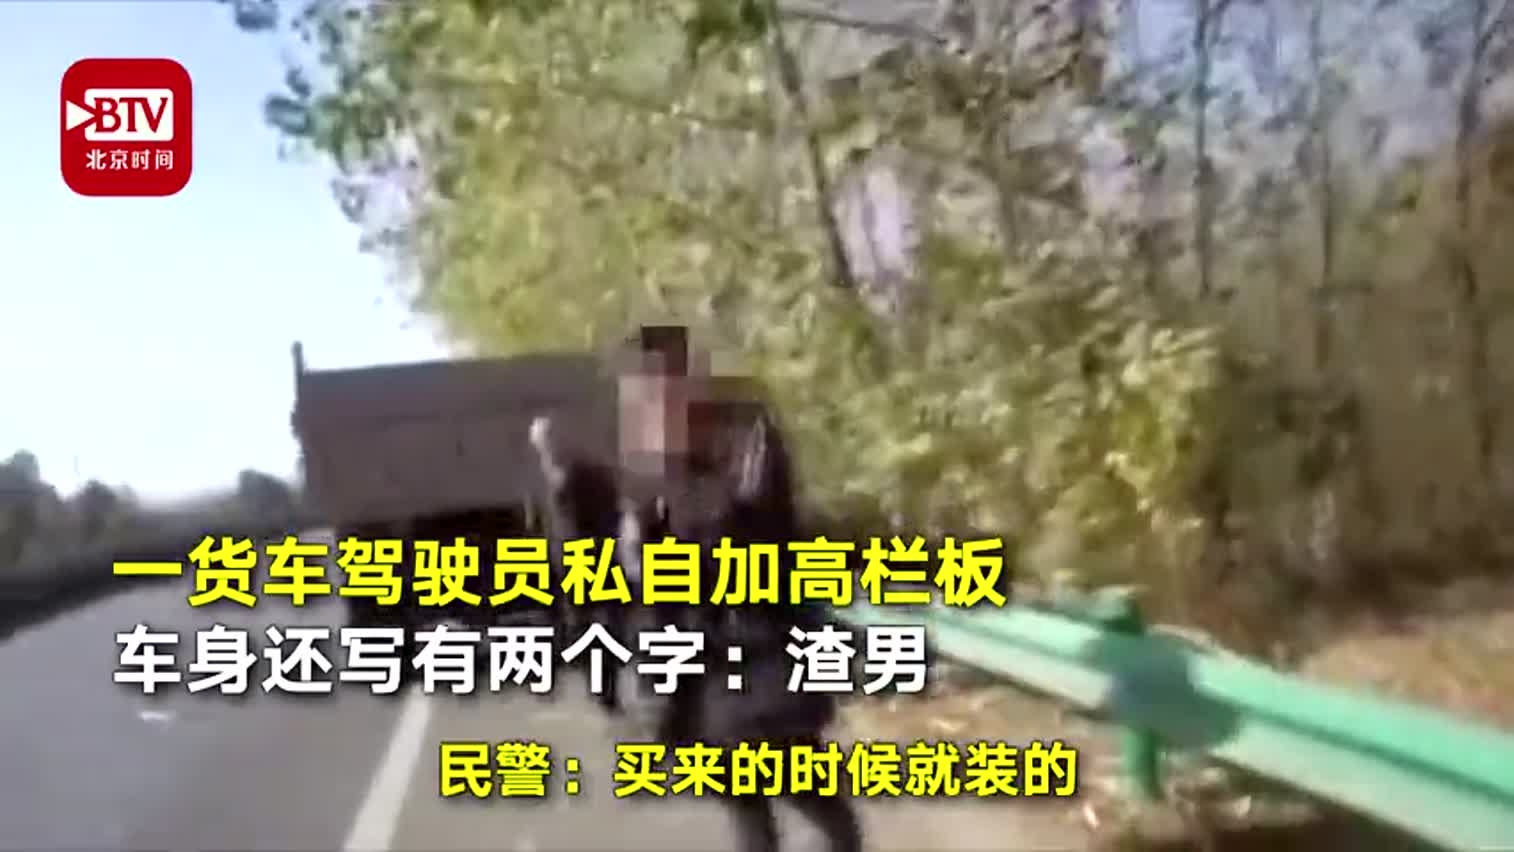 视频-男子货车上私加栏板印渣男二字 被交警拦下罚